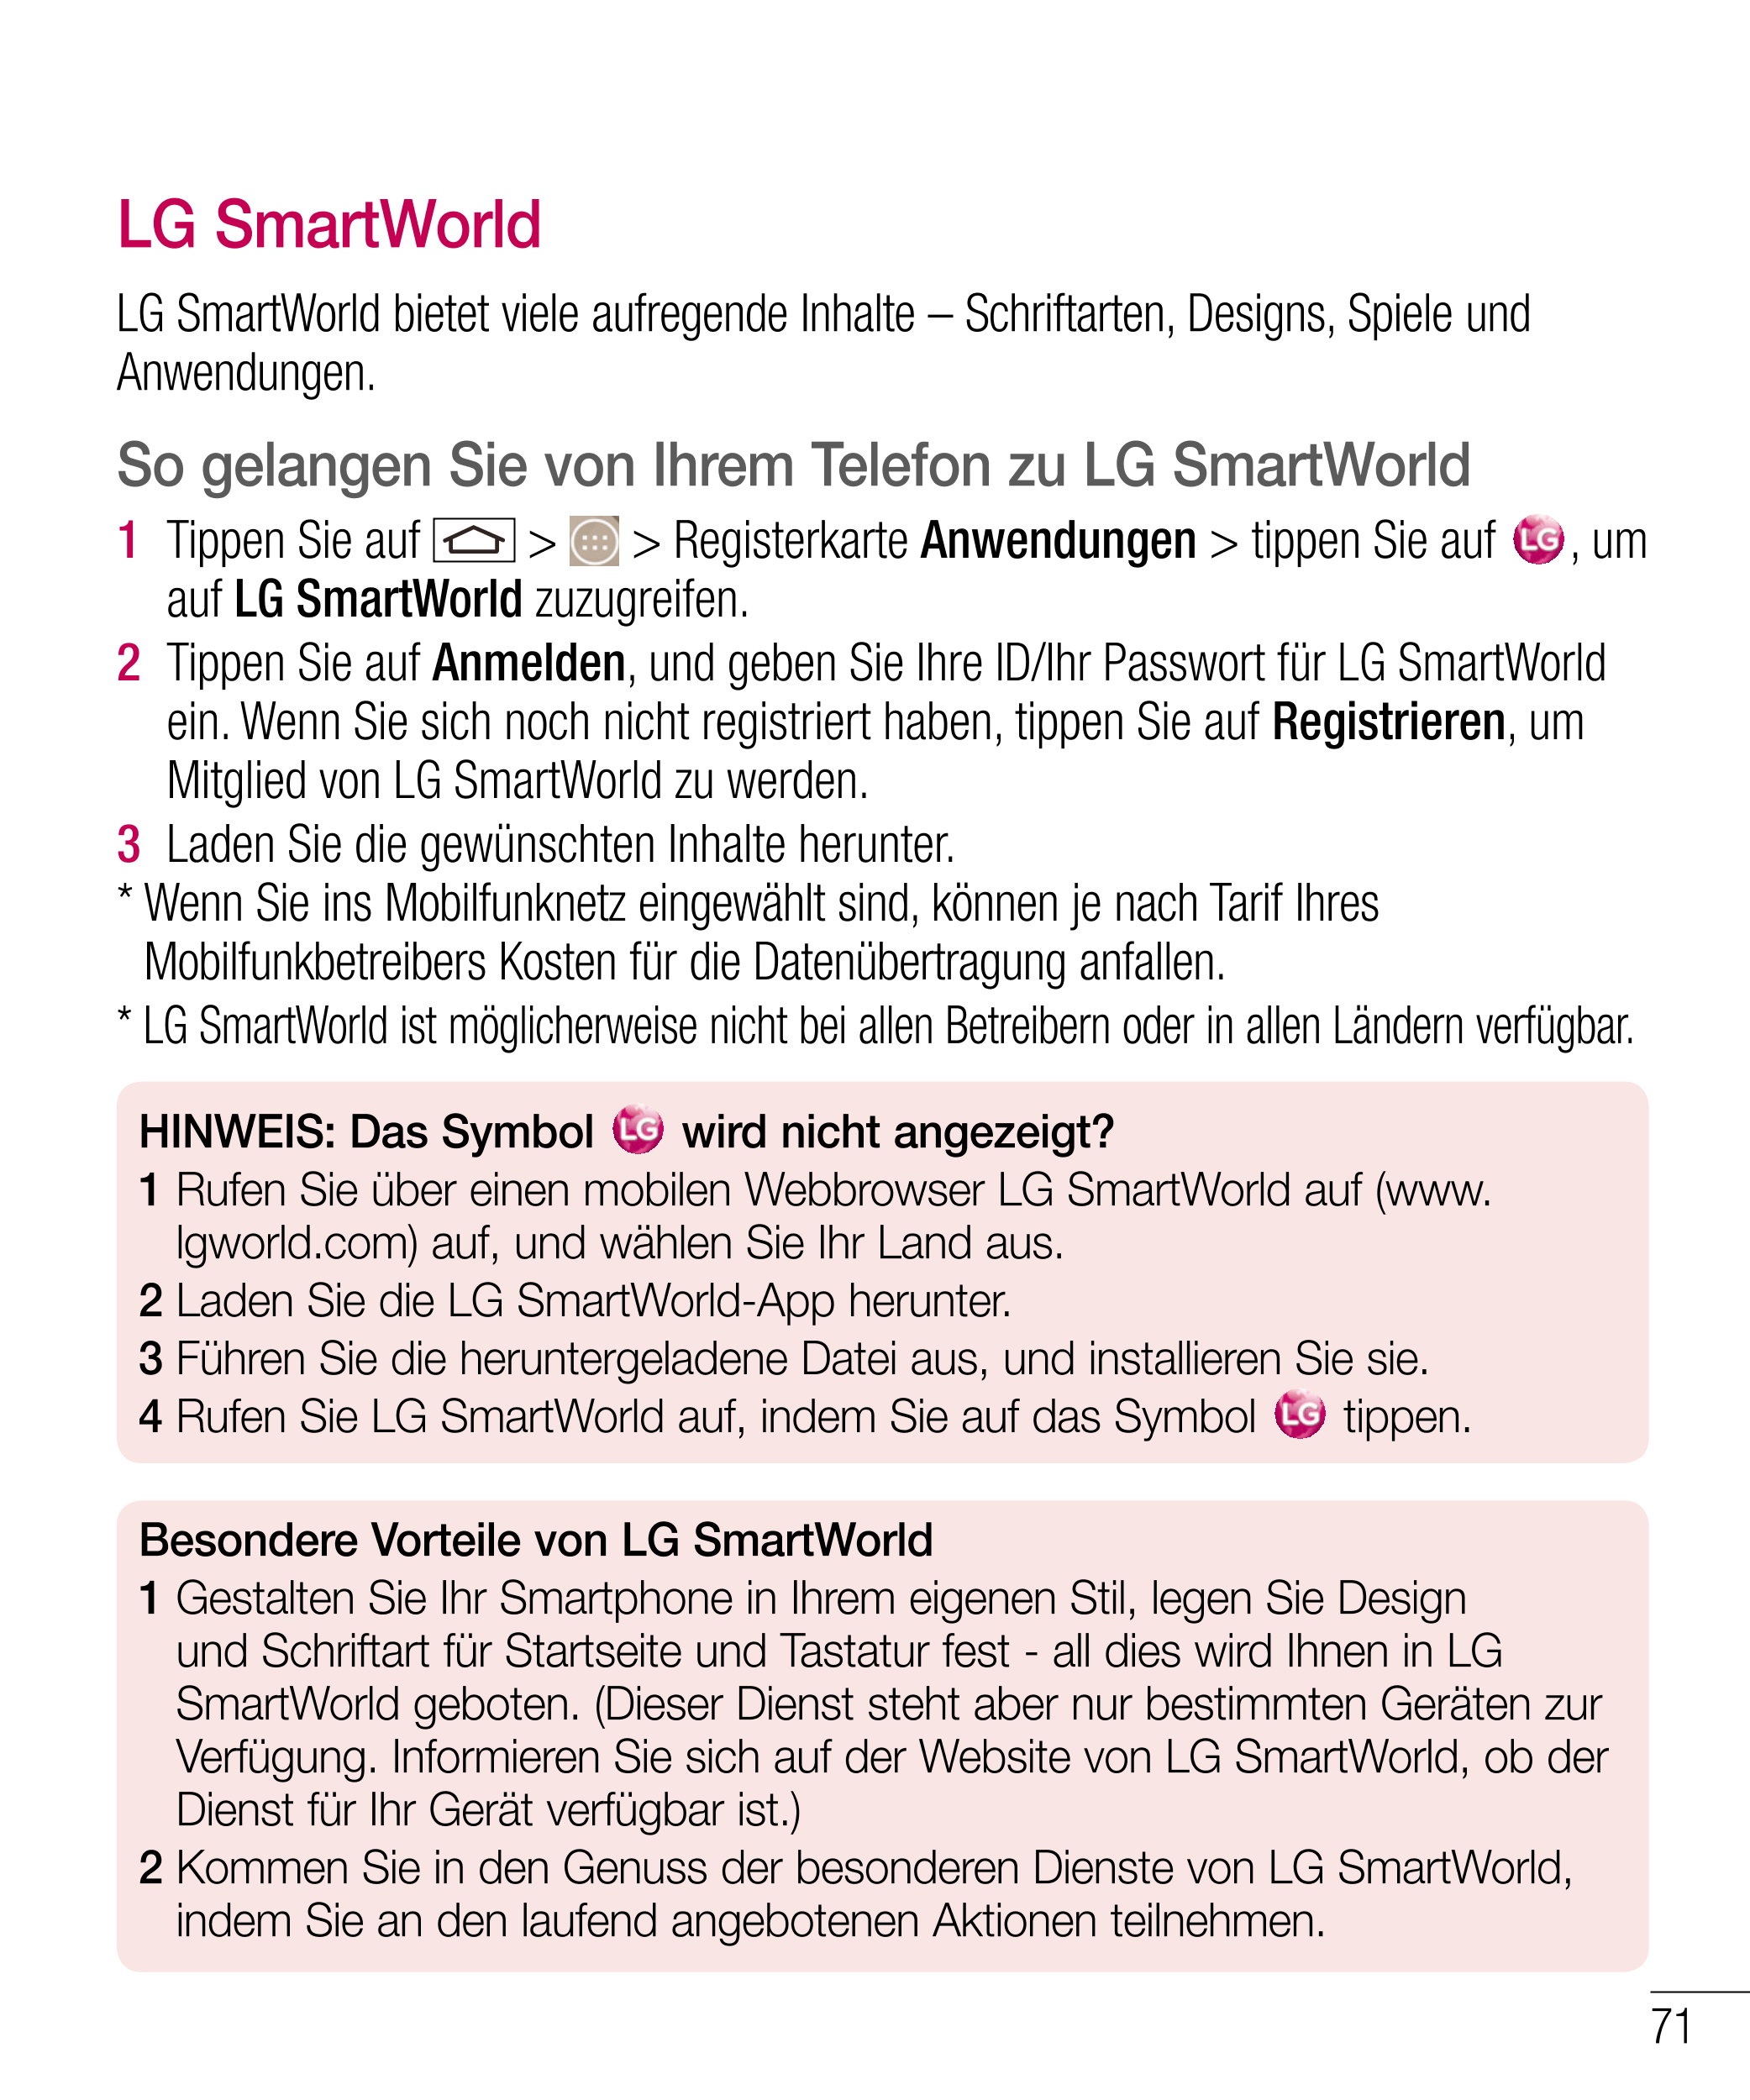 LG SmartWorld
LG SmartWorld bietet viele aufregende Inhalte – Schriftarten, Designs, Spiele und 
Anwendungen.
So gelangen Sie vo